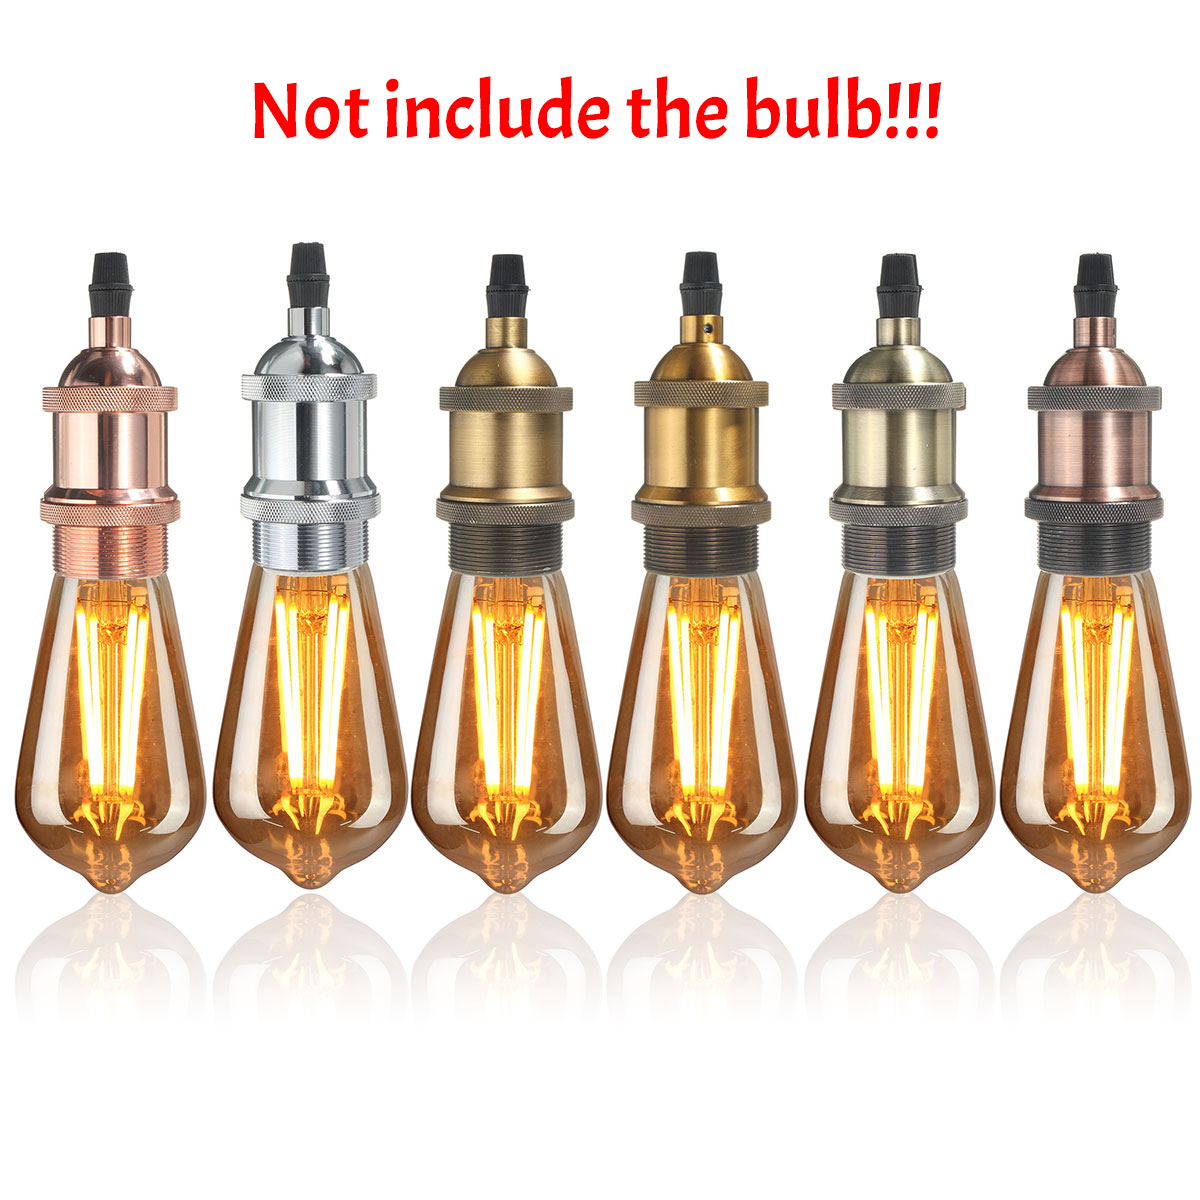 110V-220V E26/E27 Bulb Adapter Copper Light Vintage Holder Retro Lamp Socket for E27 Light Bulb